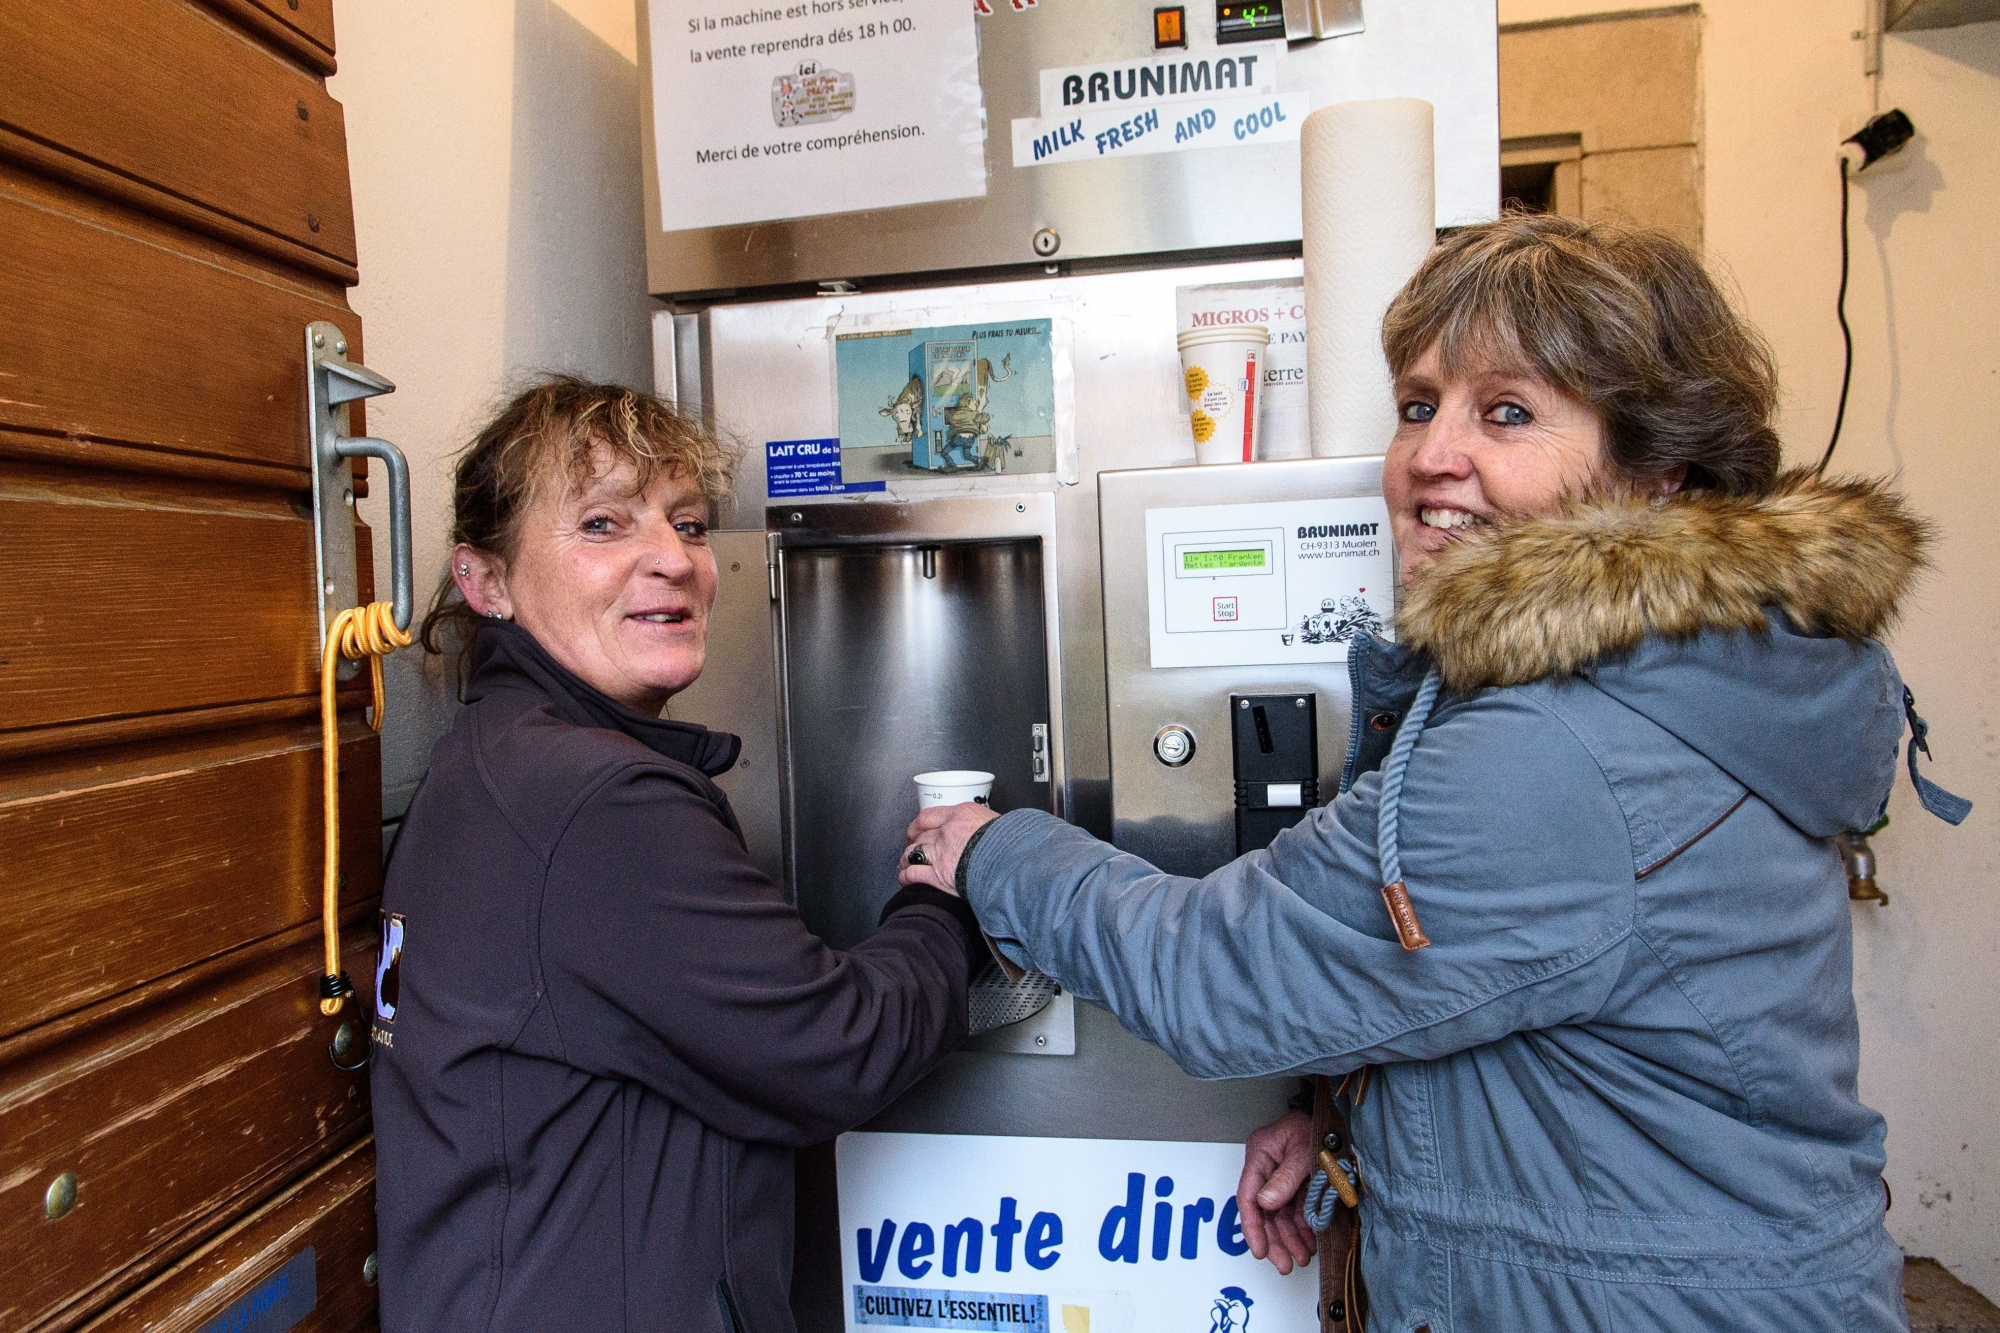 Bassins, vendredi 26 janvier 2018, machine à distribuer le lait en self, sur l'image, les soeurs Treboux, Liliane et Sonia Treboux, photos Cédric Sandoz